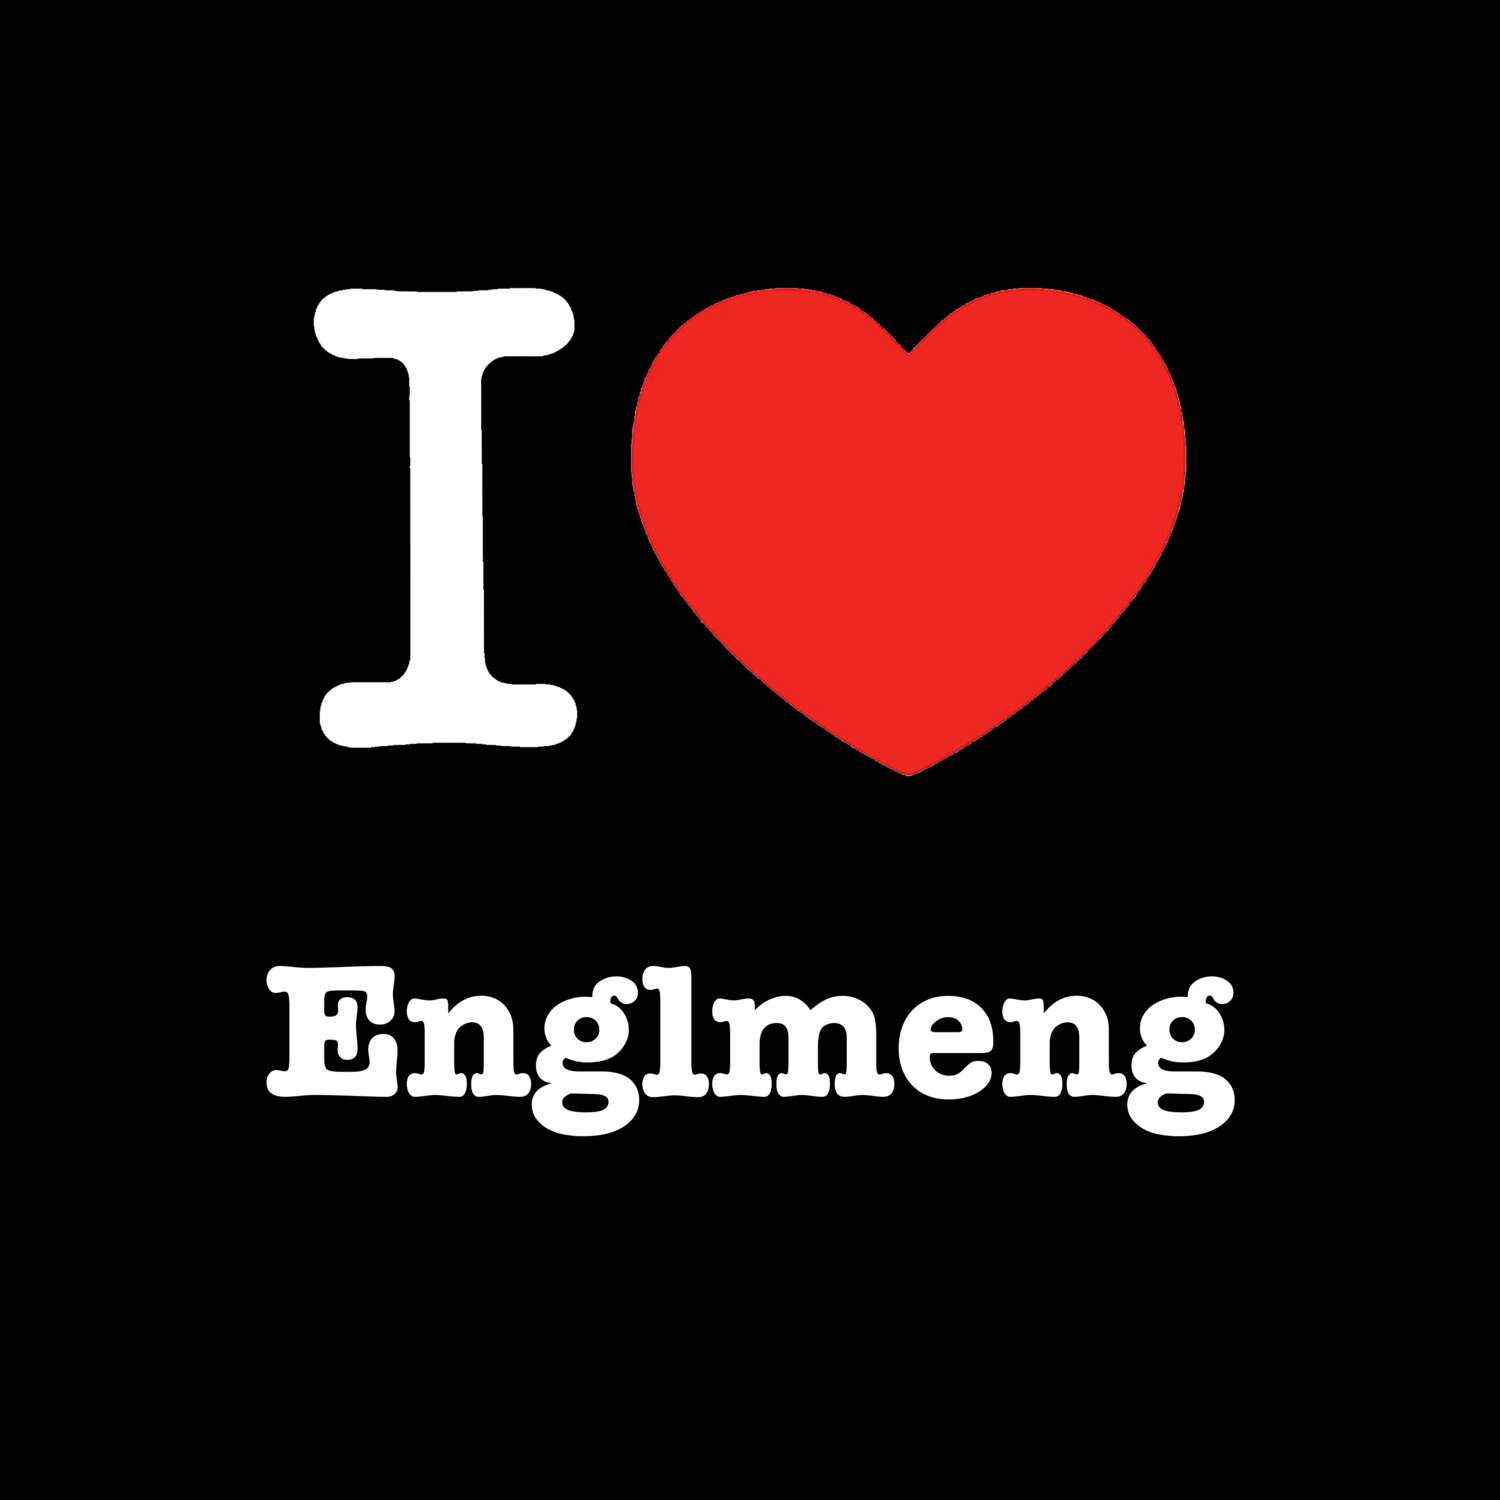 Englmeng T-Shirt »I love«